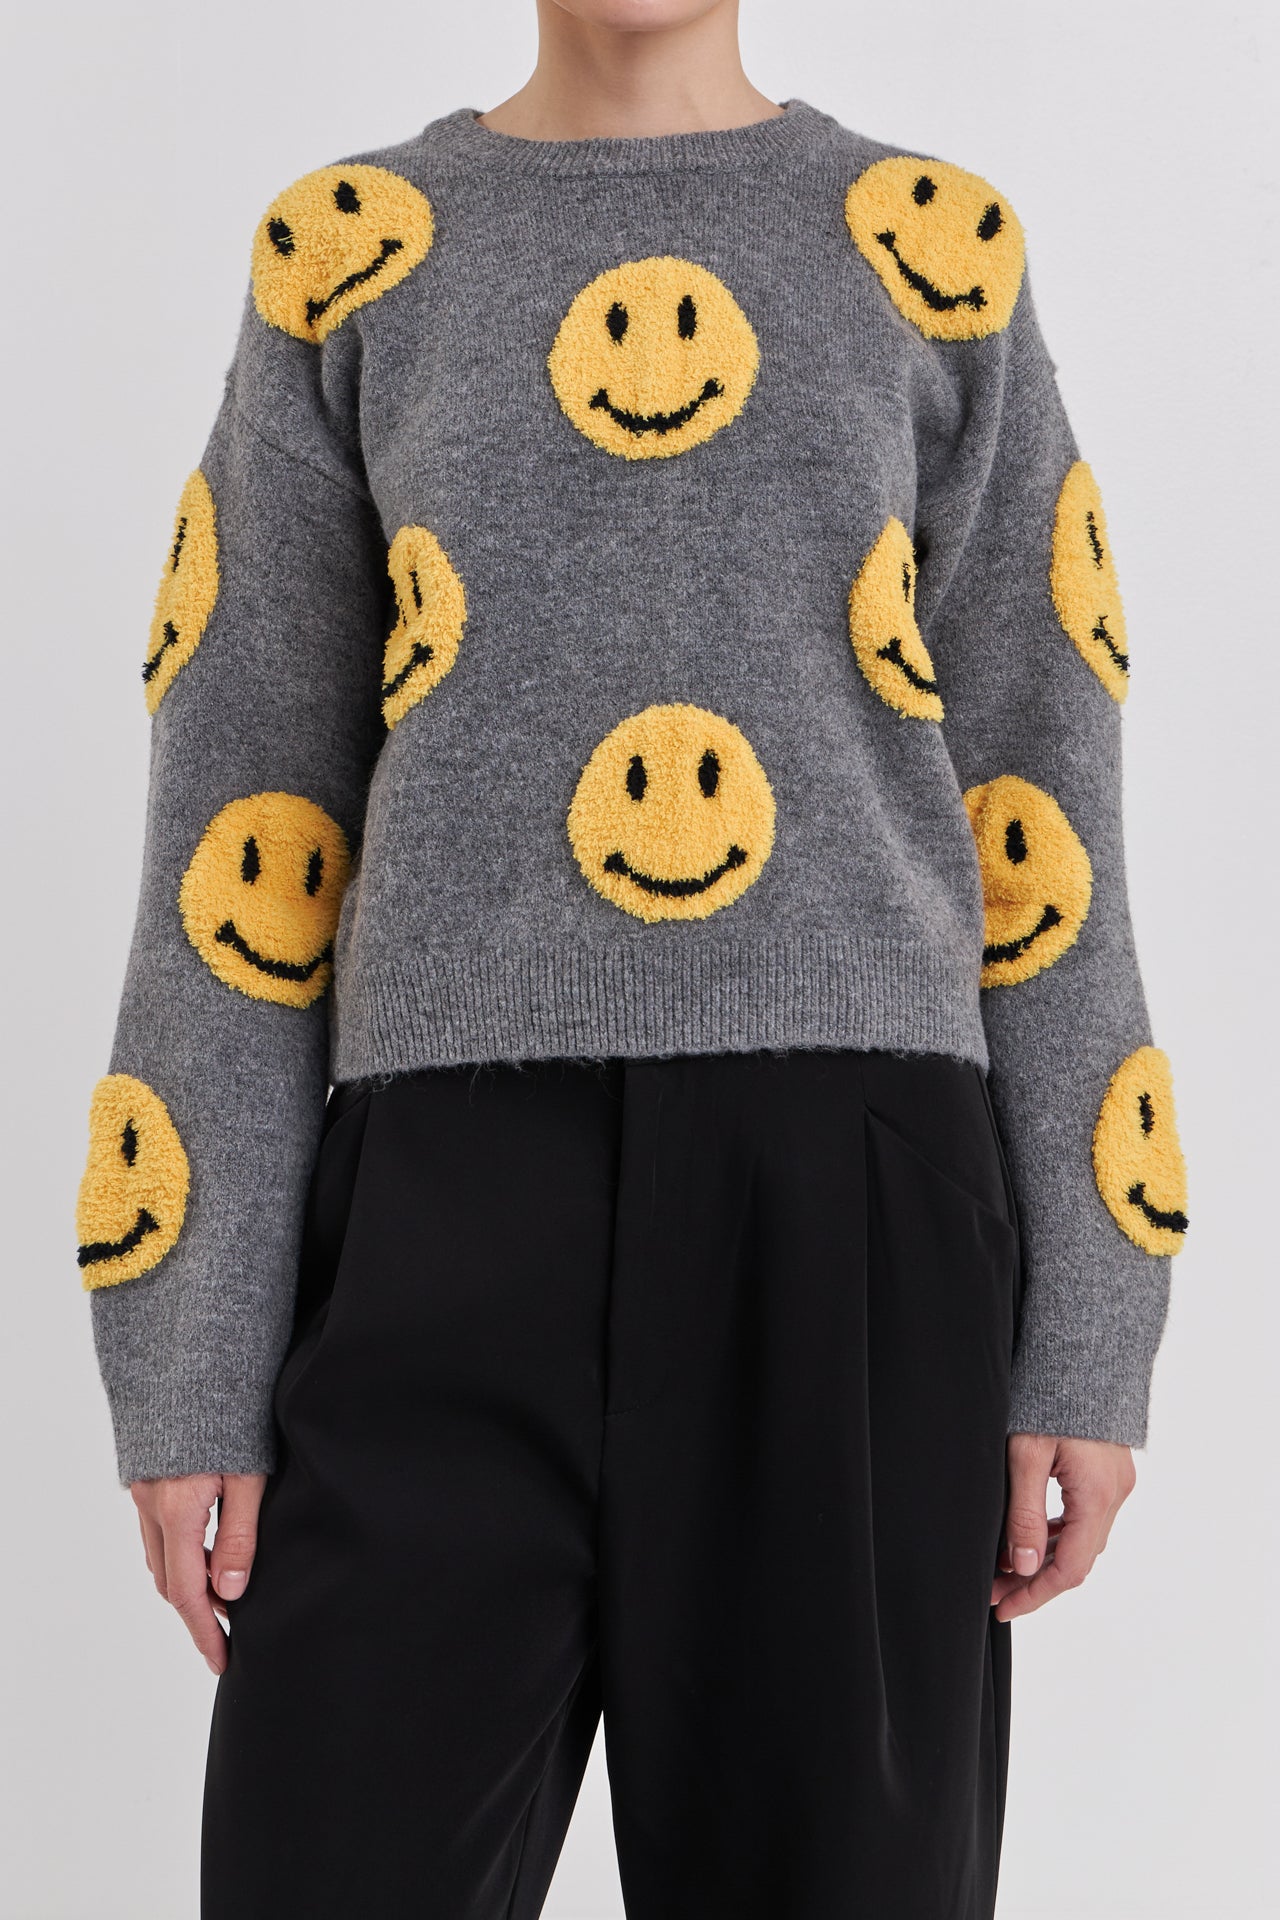 Suéter con cara sonriente